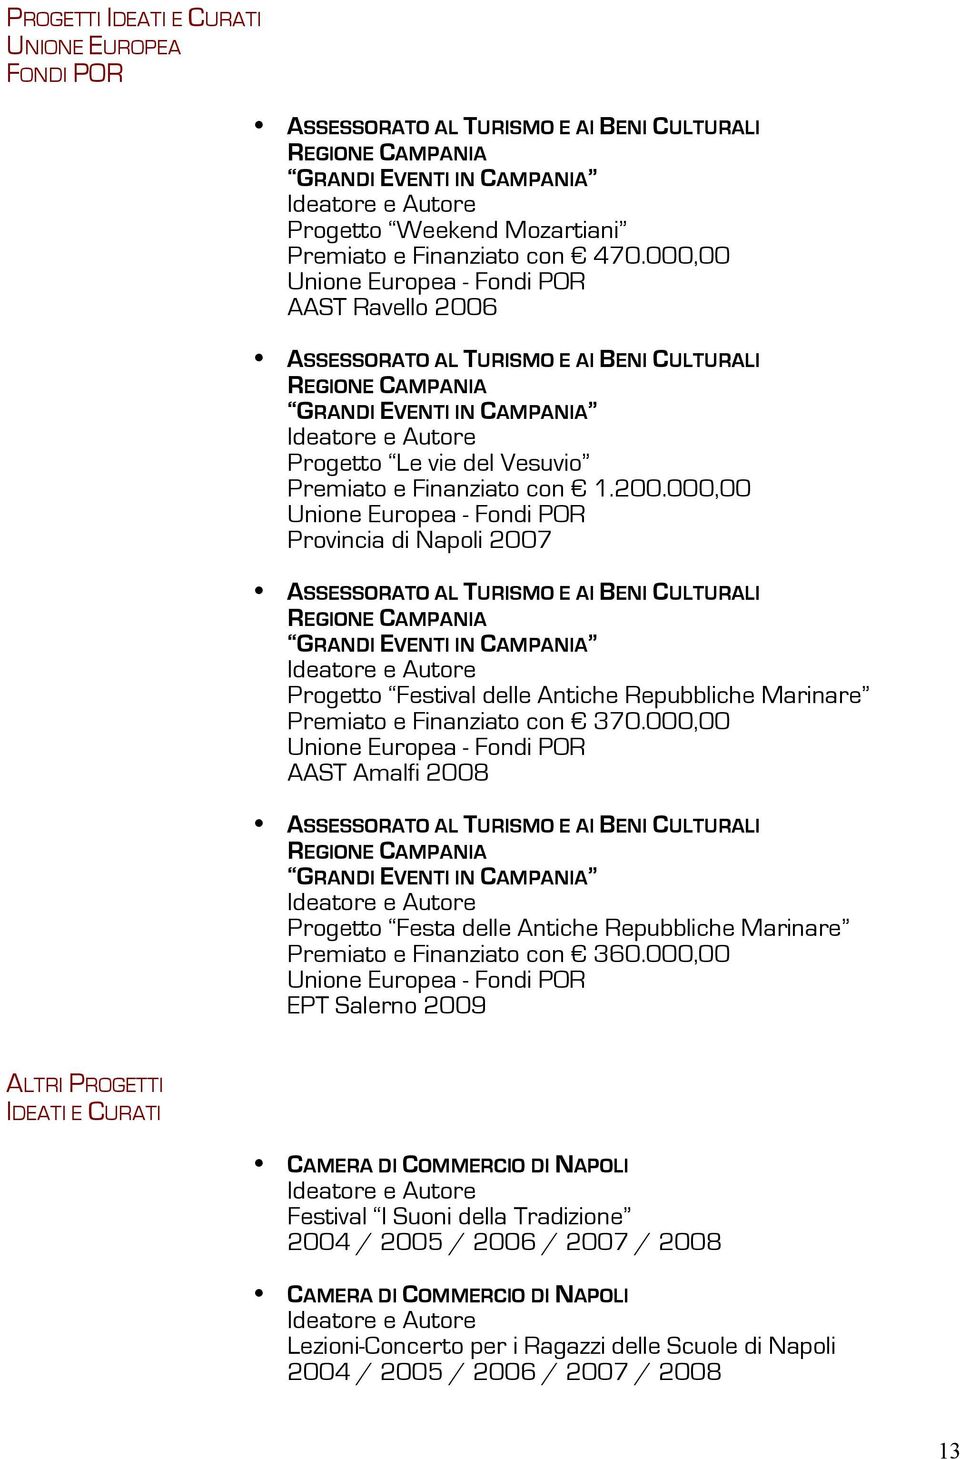 ASSESSORATO AL TURISMO E AI BENI CULTURALI REGIONE CAMPANIA GRANDI EVENTI IN CAMPANIA Progetto Le vie del Vesuvio Premiato e Finanziato con 1.200.